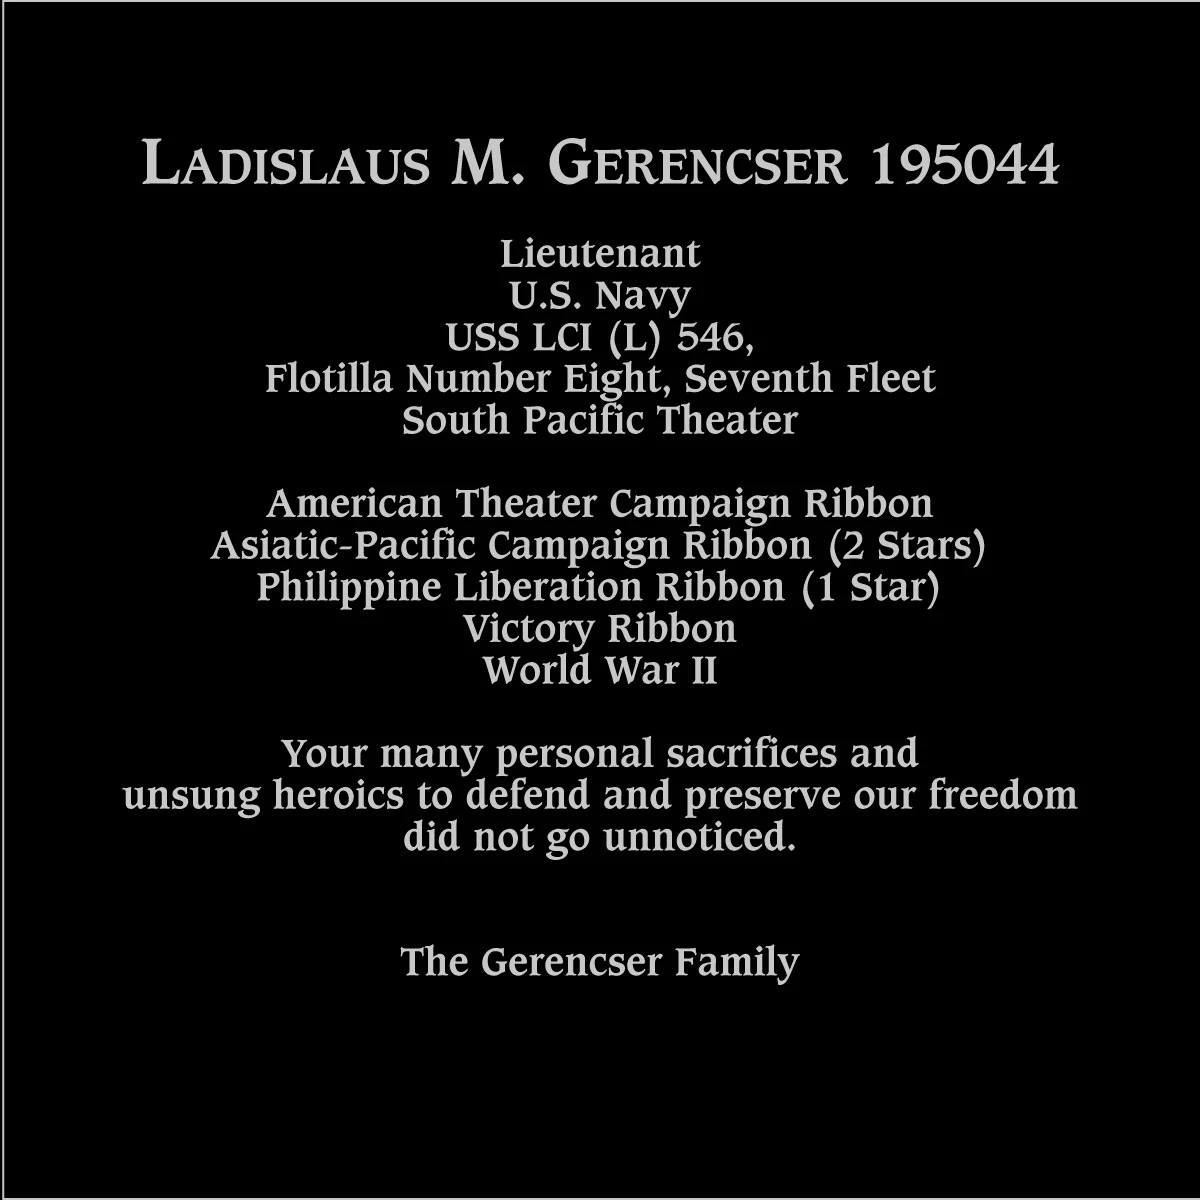 Ladislaus M. Gerencser